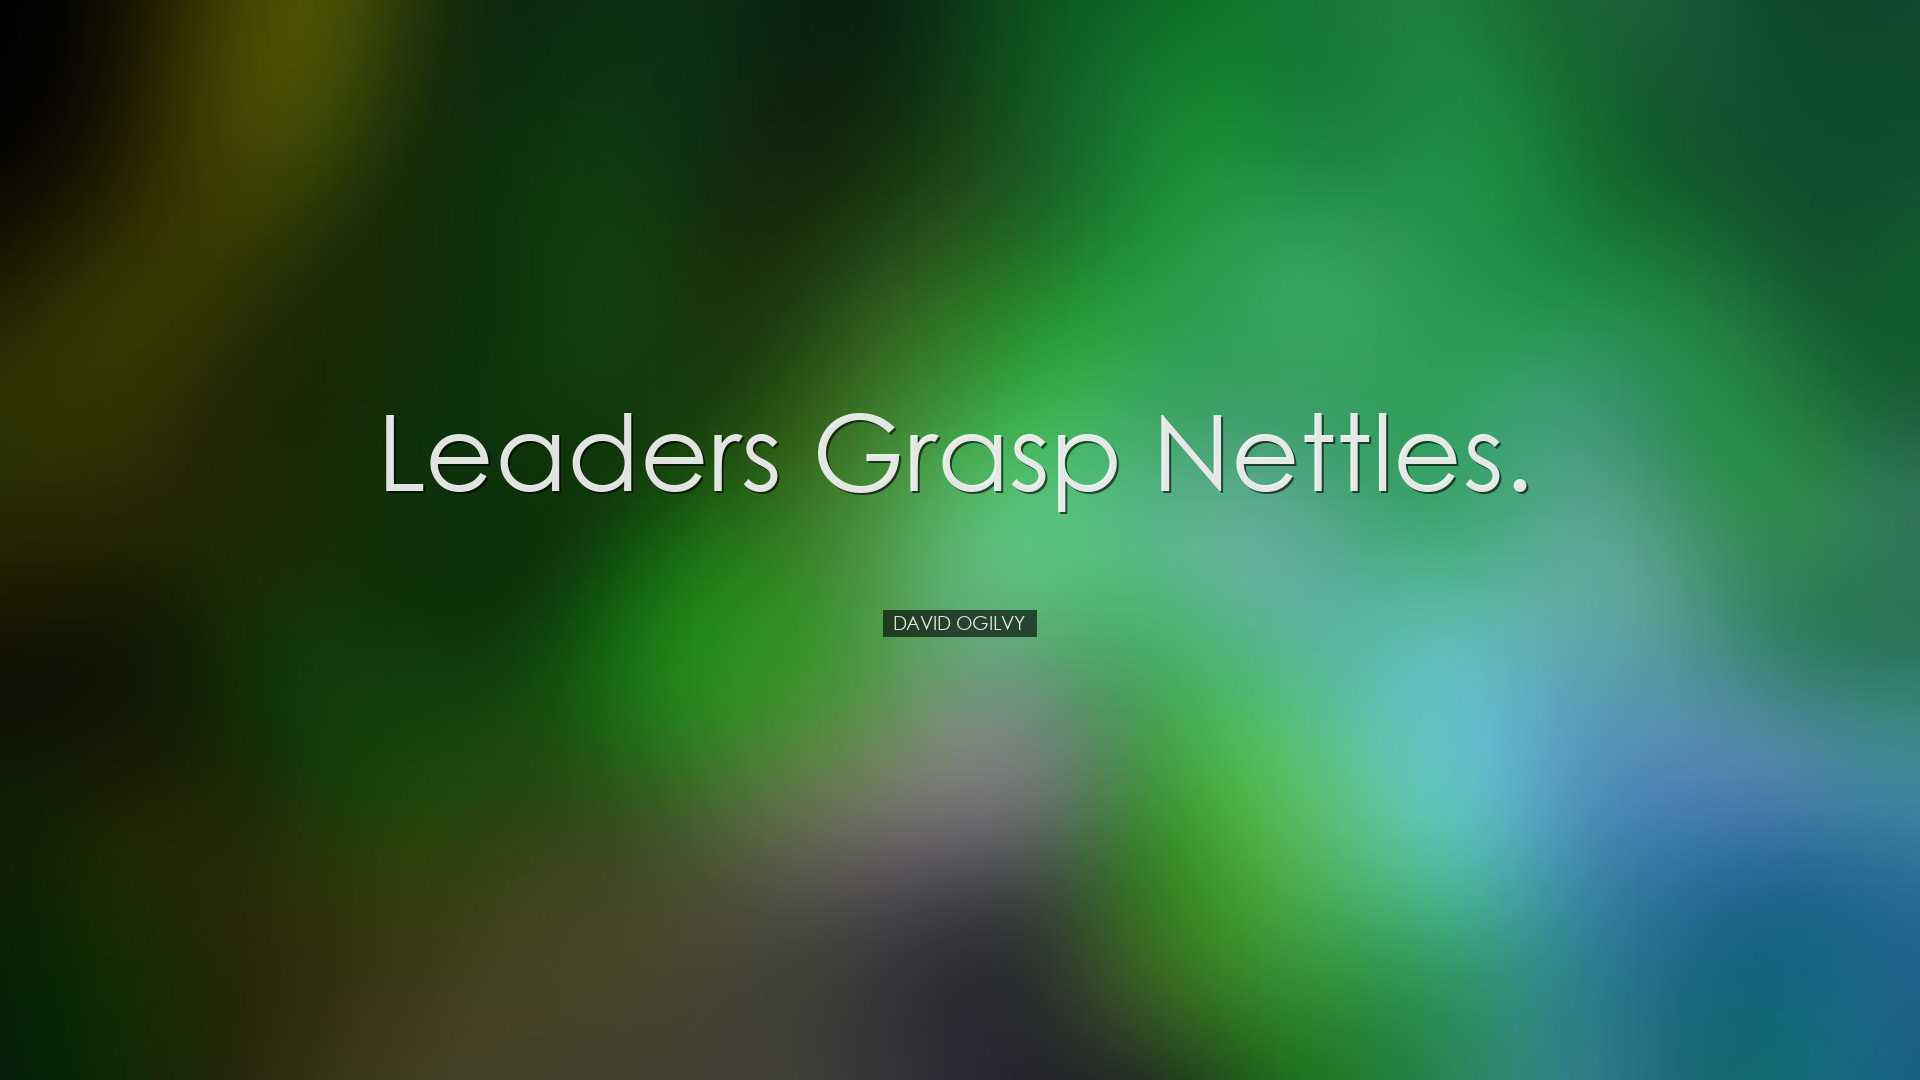 Leaders grasp nettles. - David Ogilvy